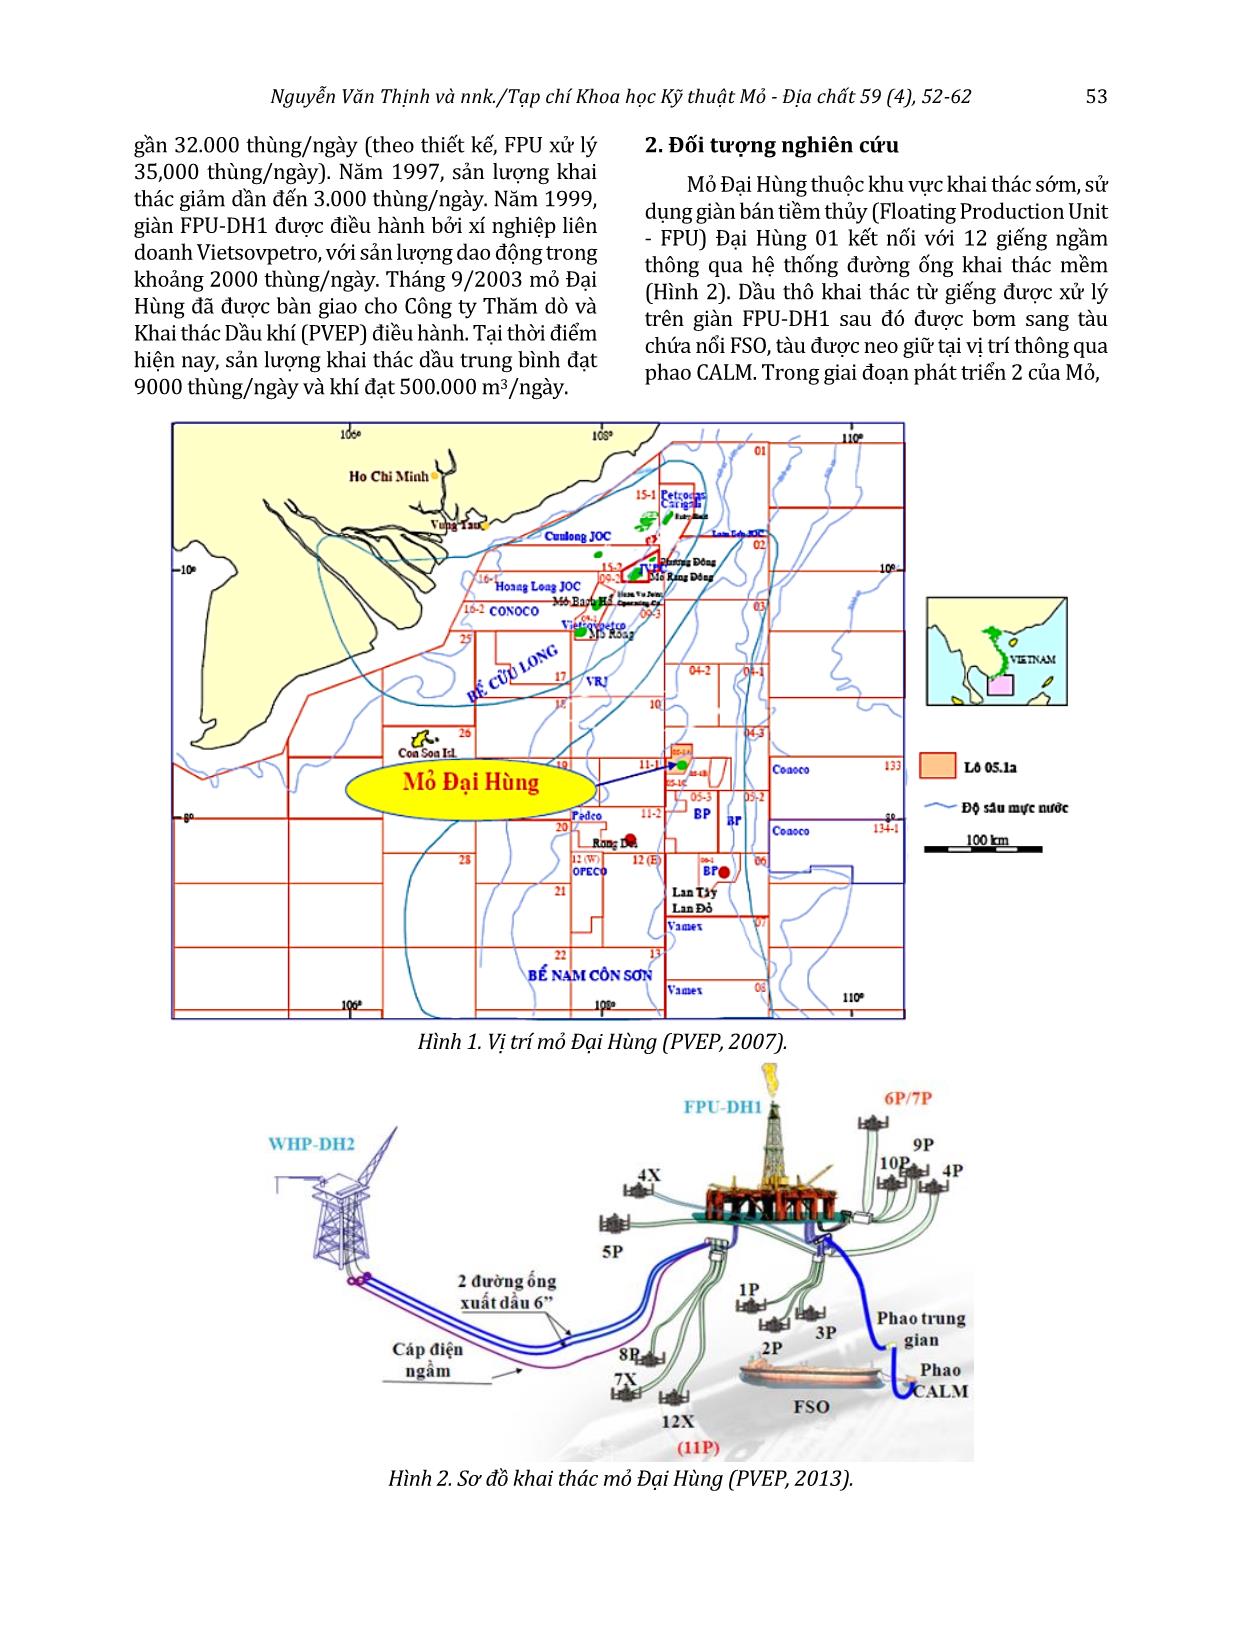 Nghiên cứu giải pháp đảm bảo dòng chảy cho đường ống vận chuyển dầu từ giàn WHP-DH2 tới giàn FPU-DH1 mỏ Đại Hùng trang 2